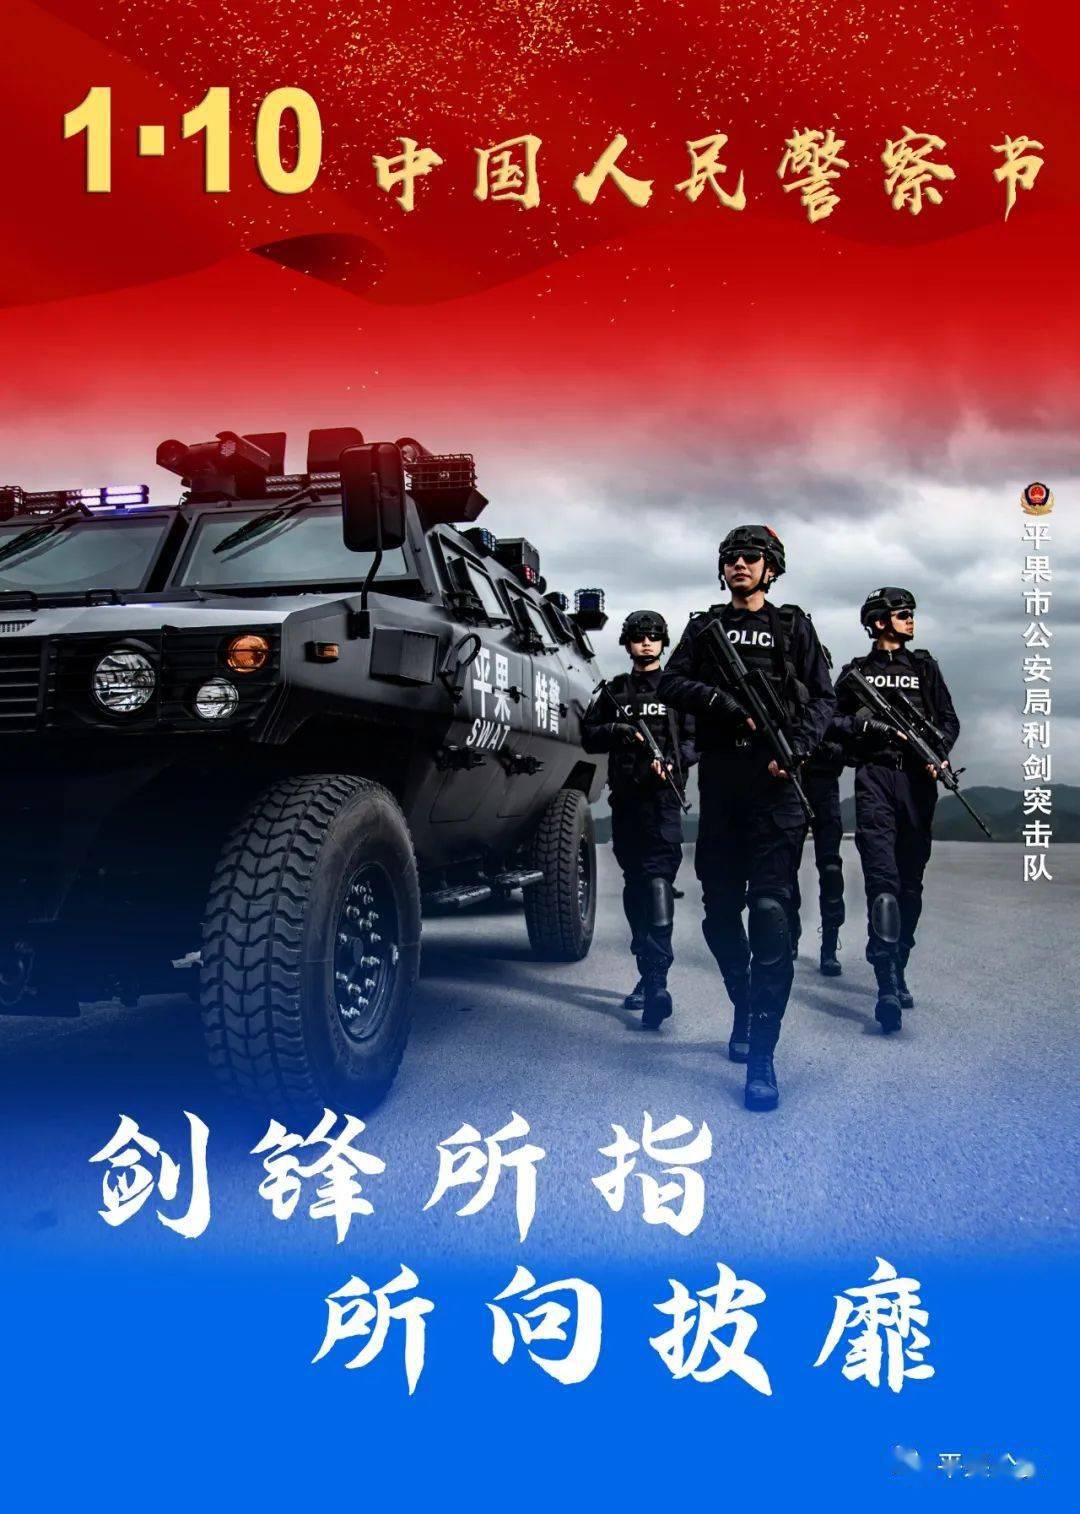 平果公安一组超燃海报,致敬首个中国人民警察节-搜狐大视野-搜狐新闻